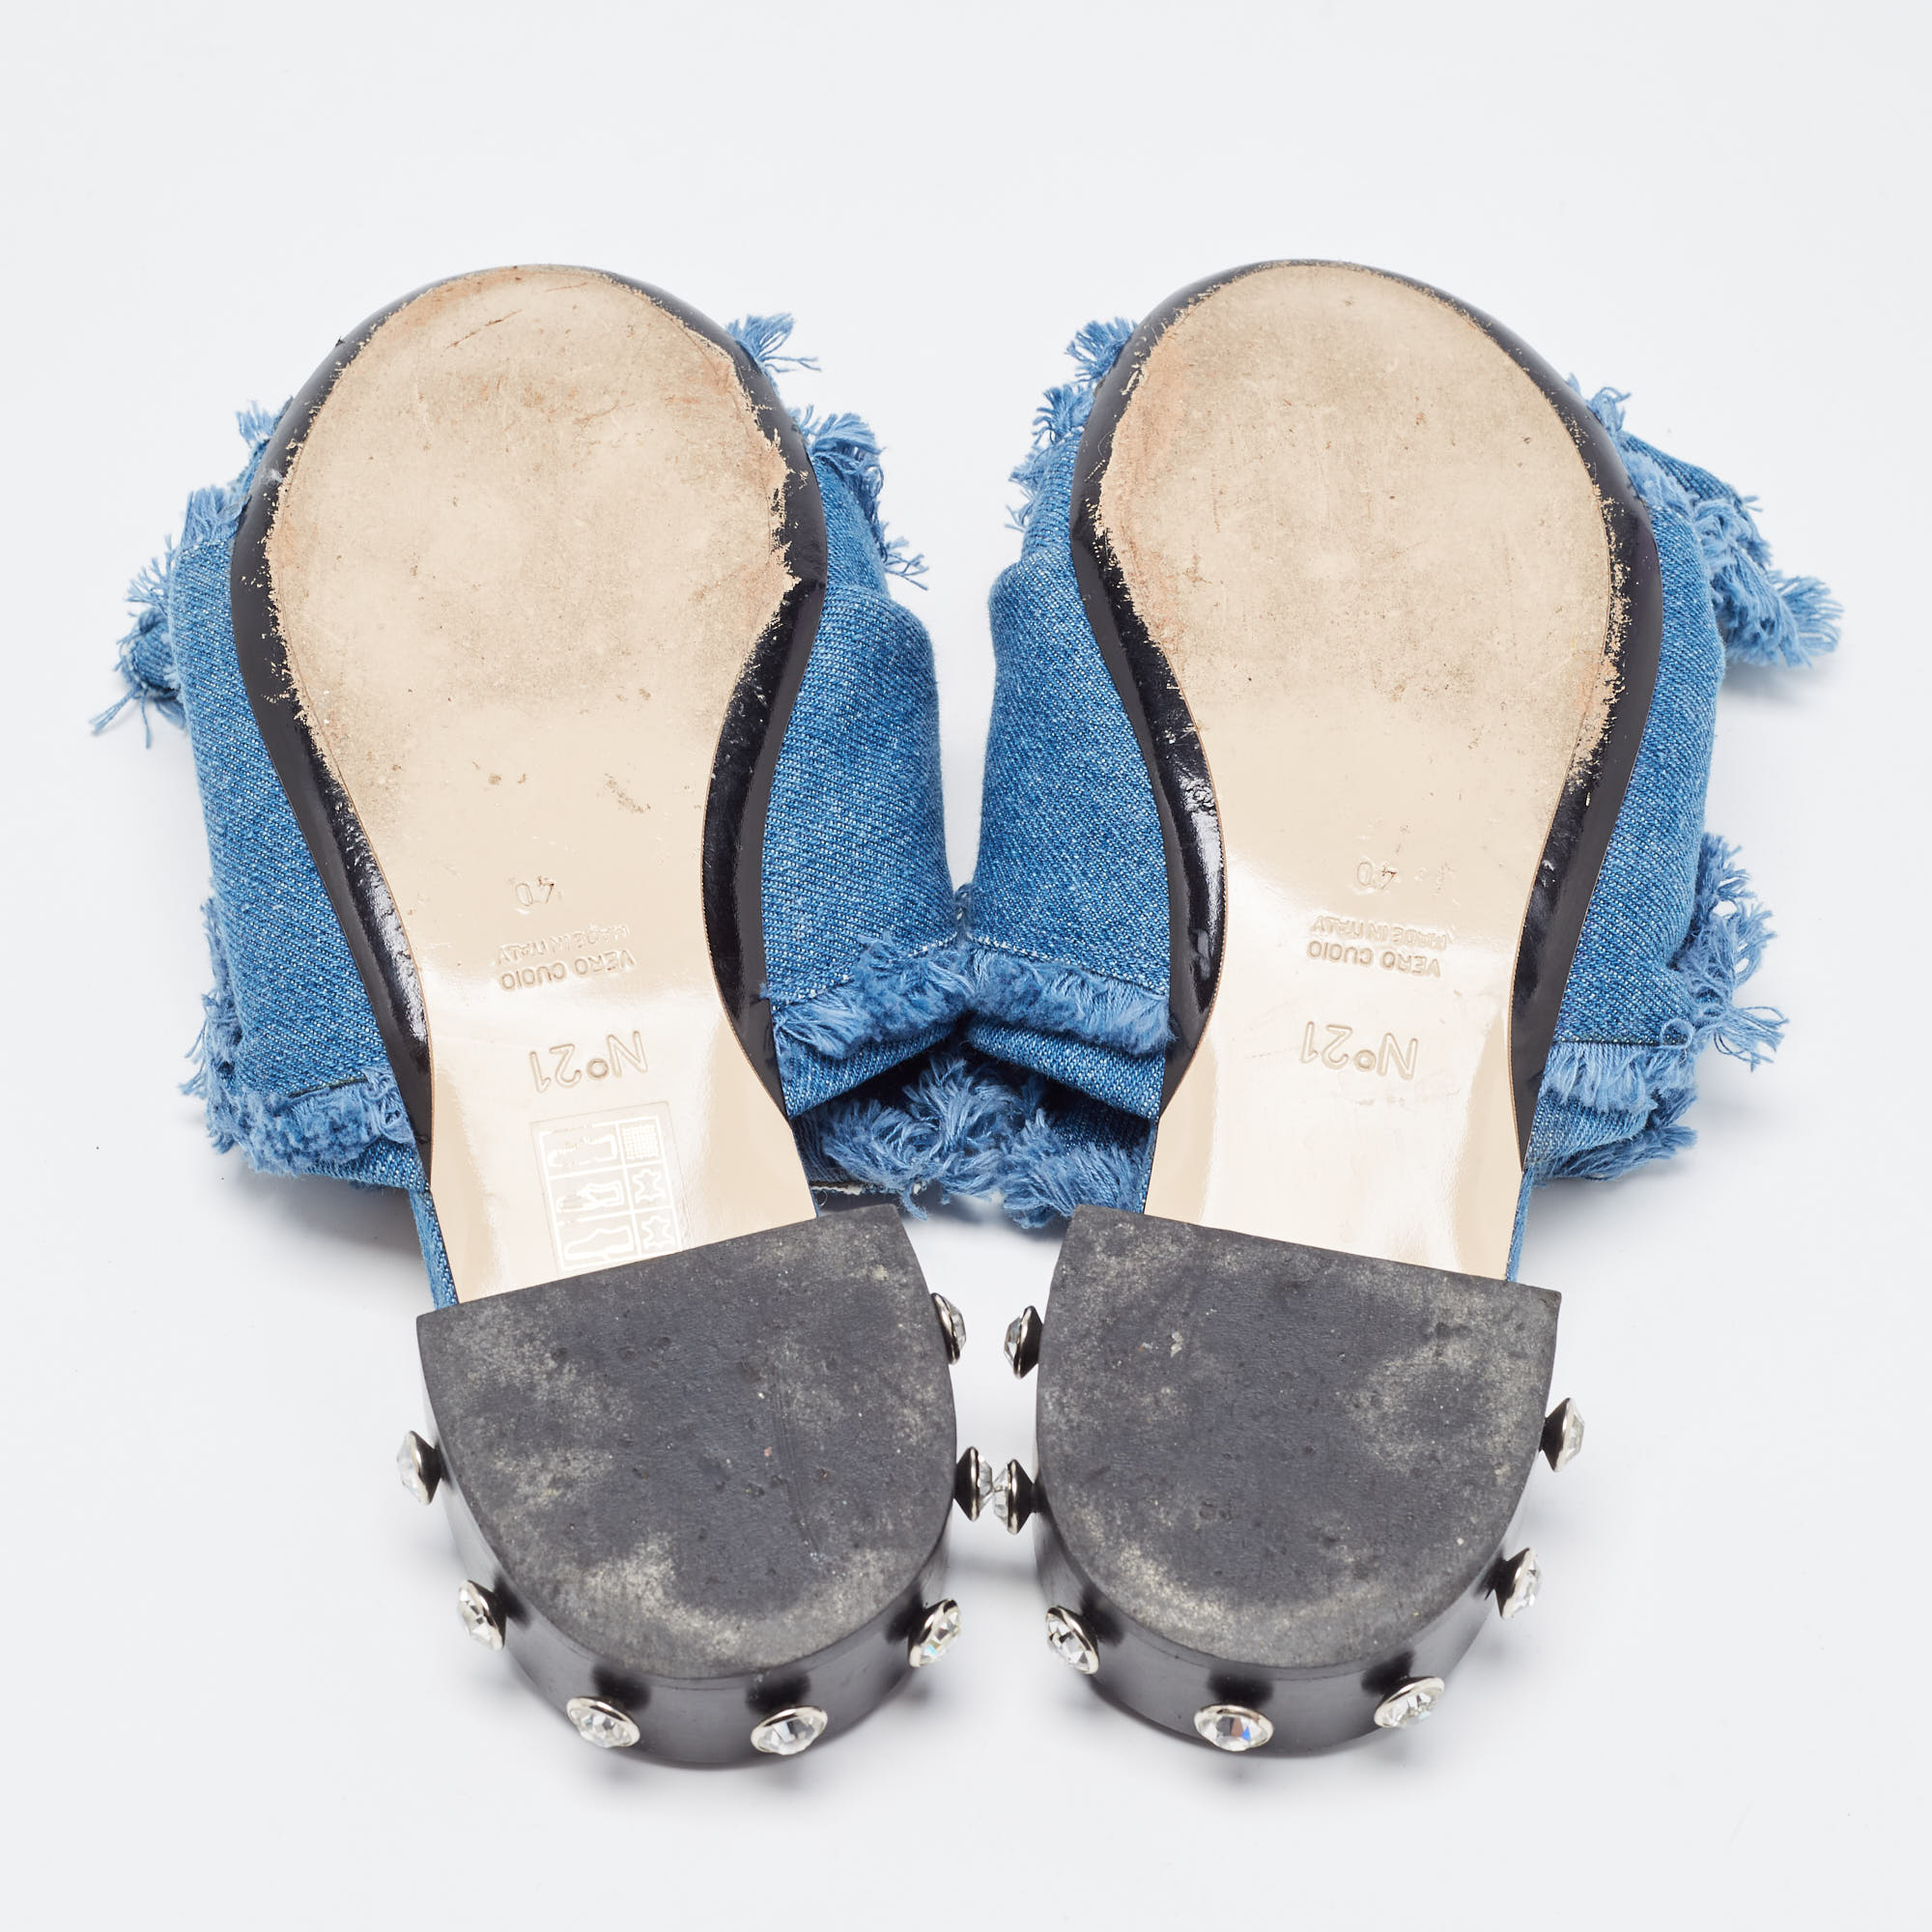 N21 Blue Denim Crystal Embellished Knotted Flat Sandals Size 40